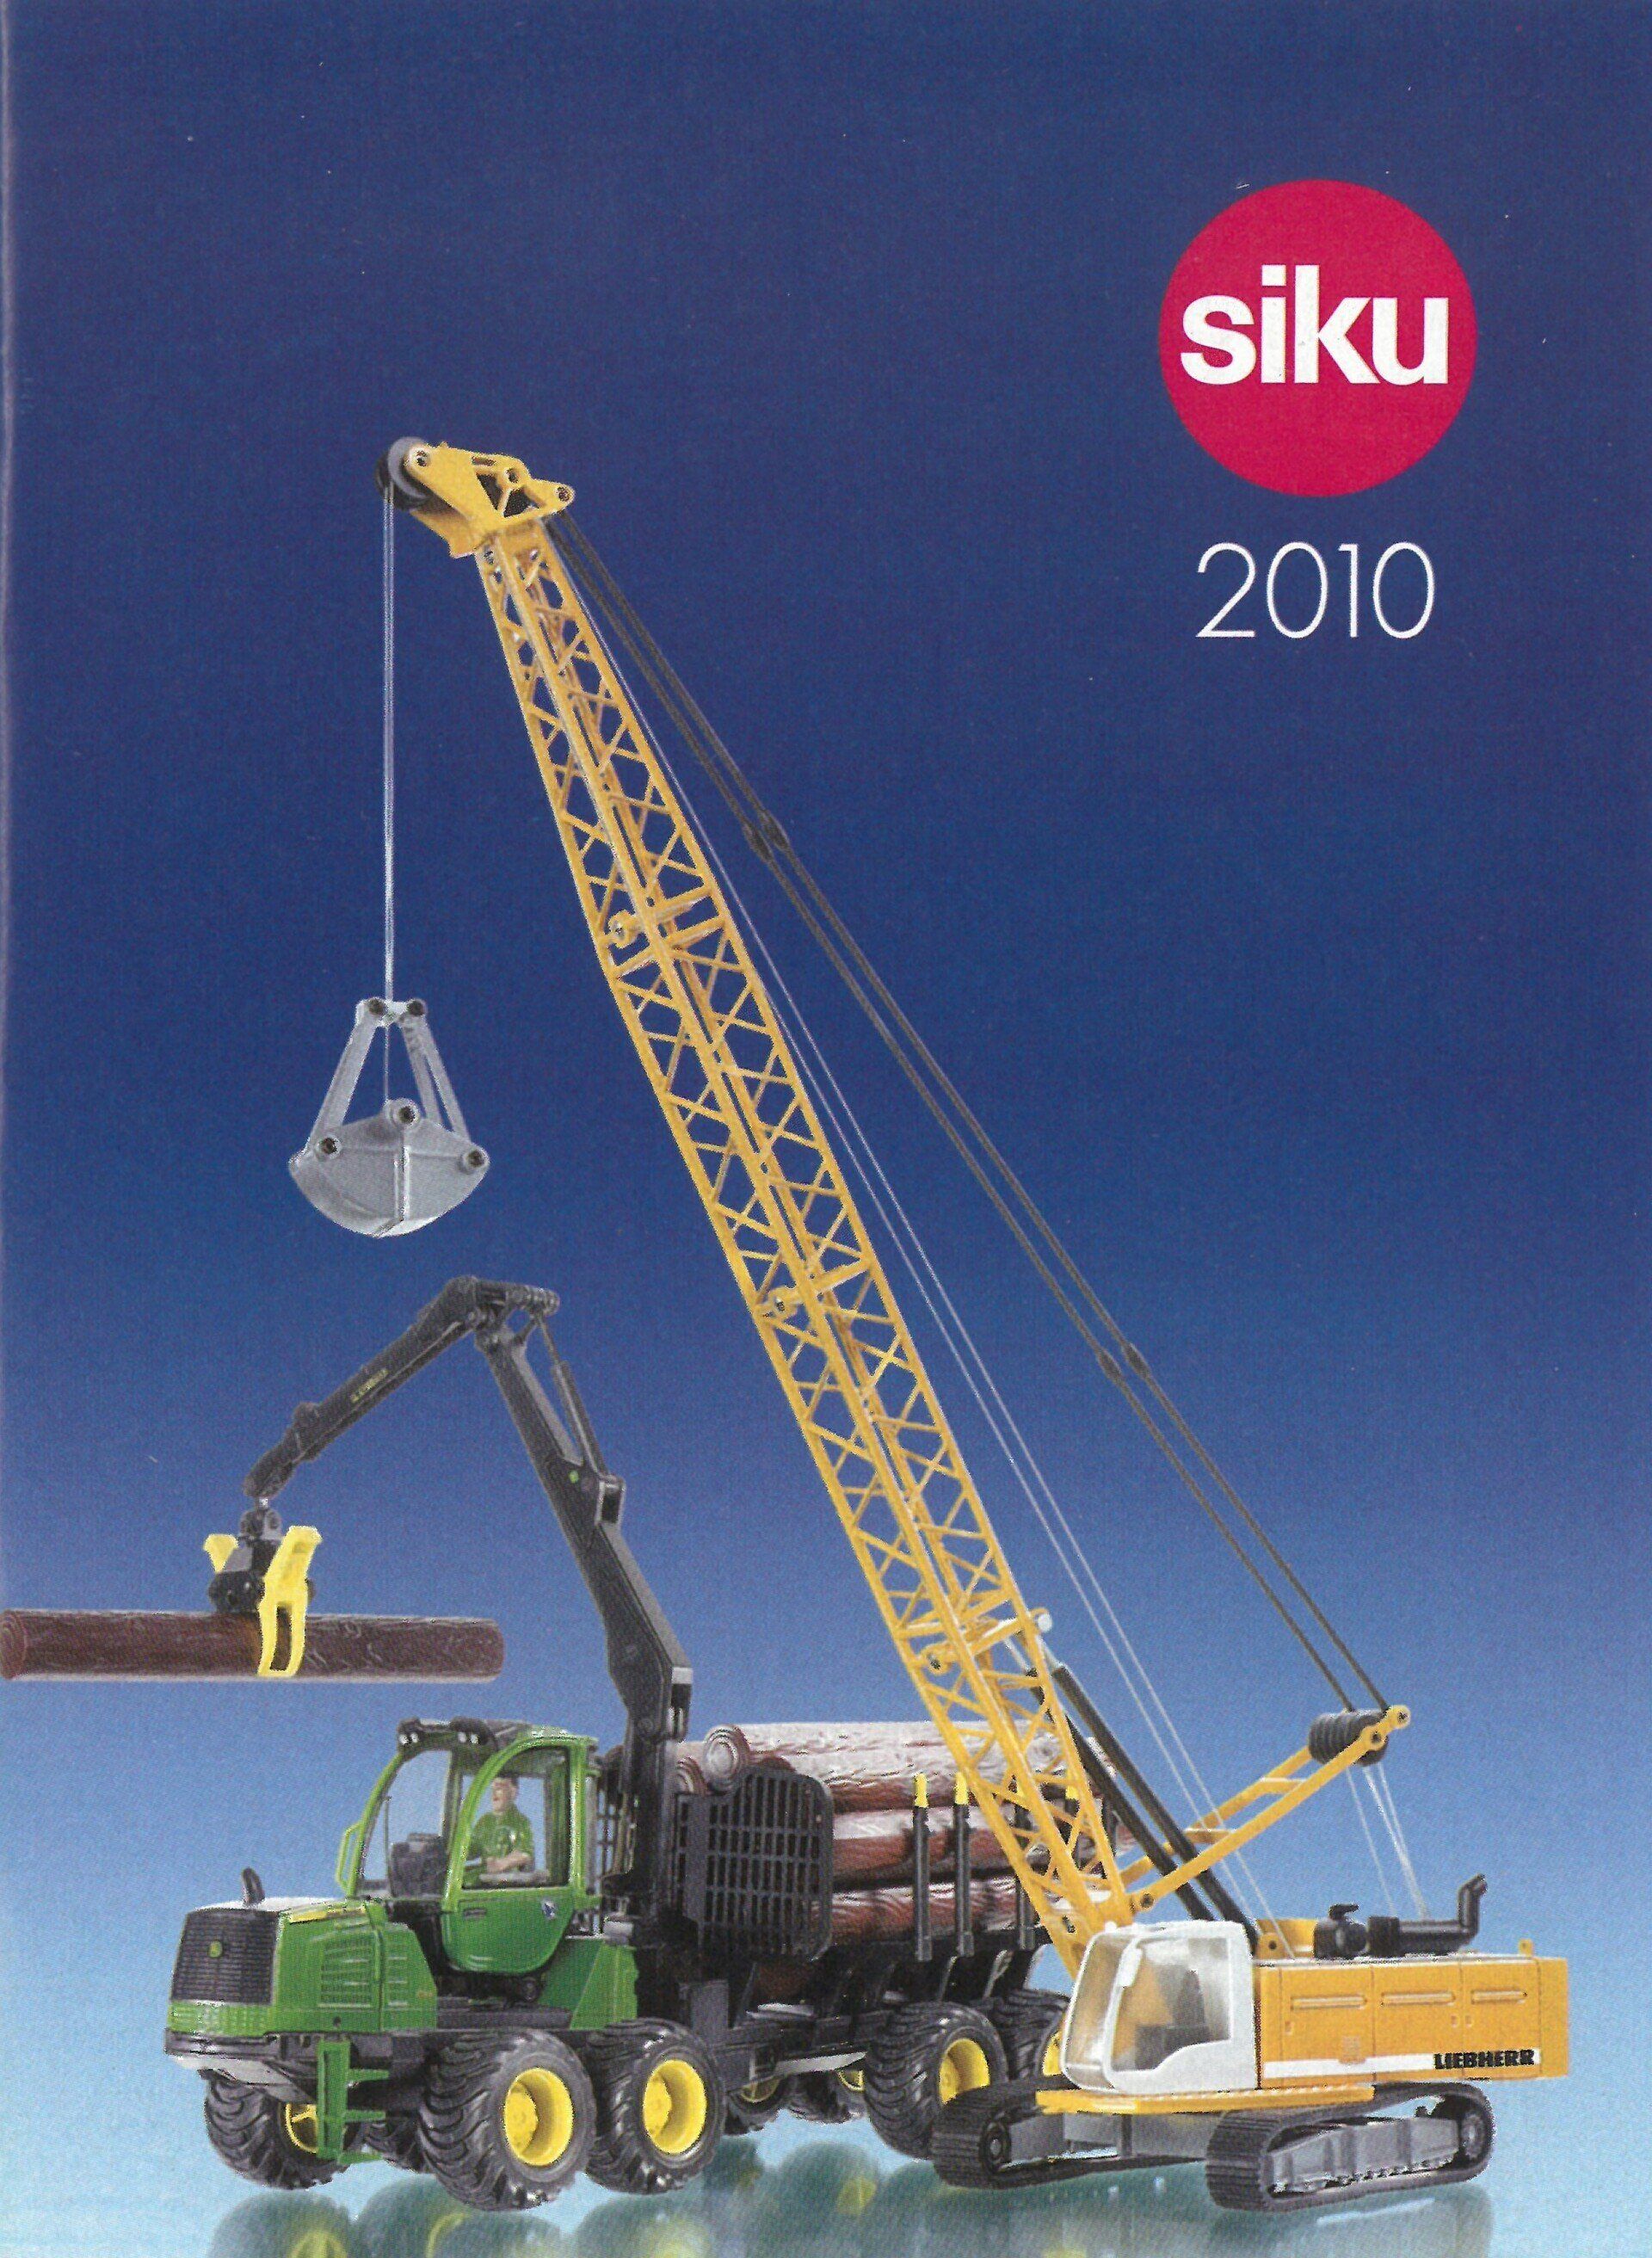 Siku catalogue 2010